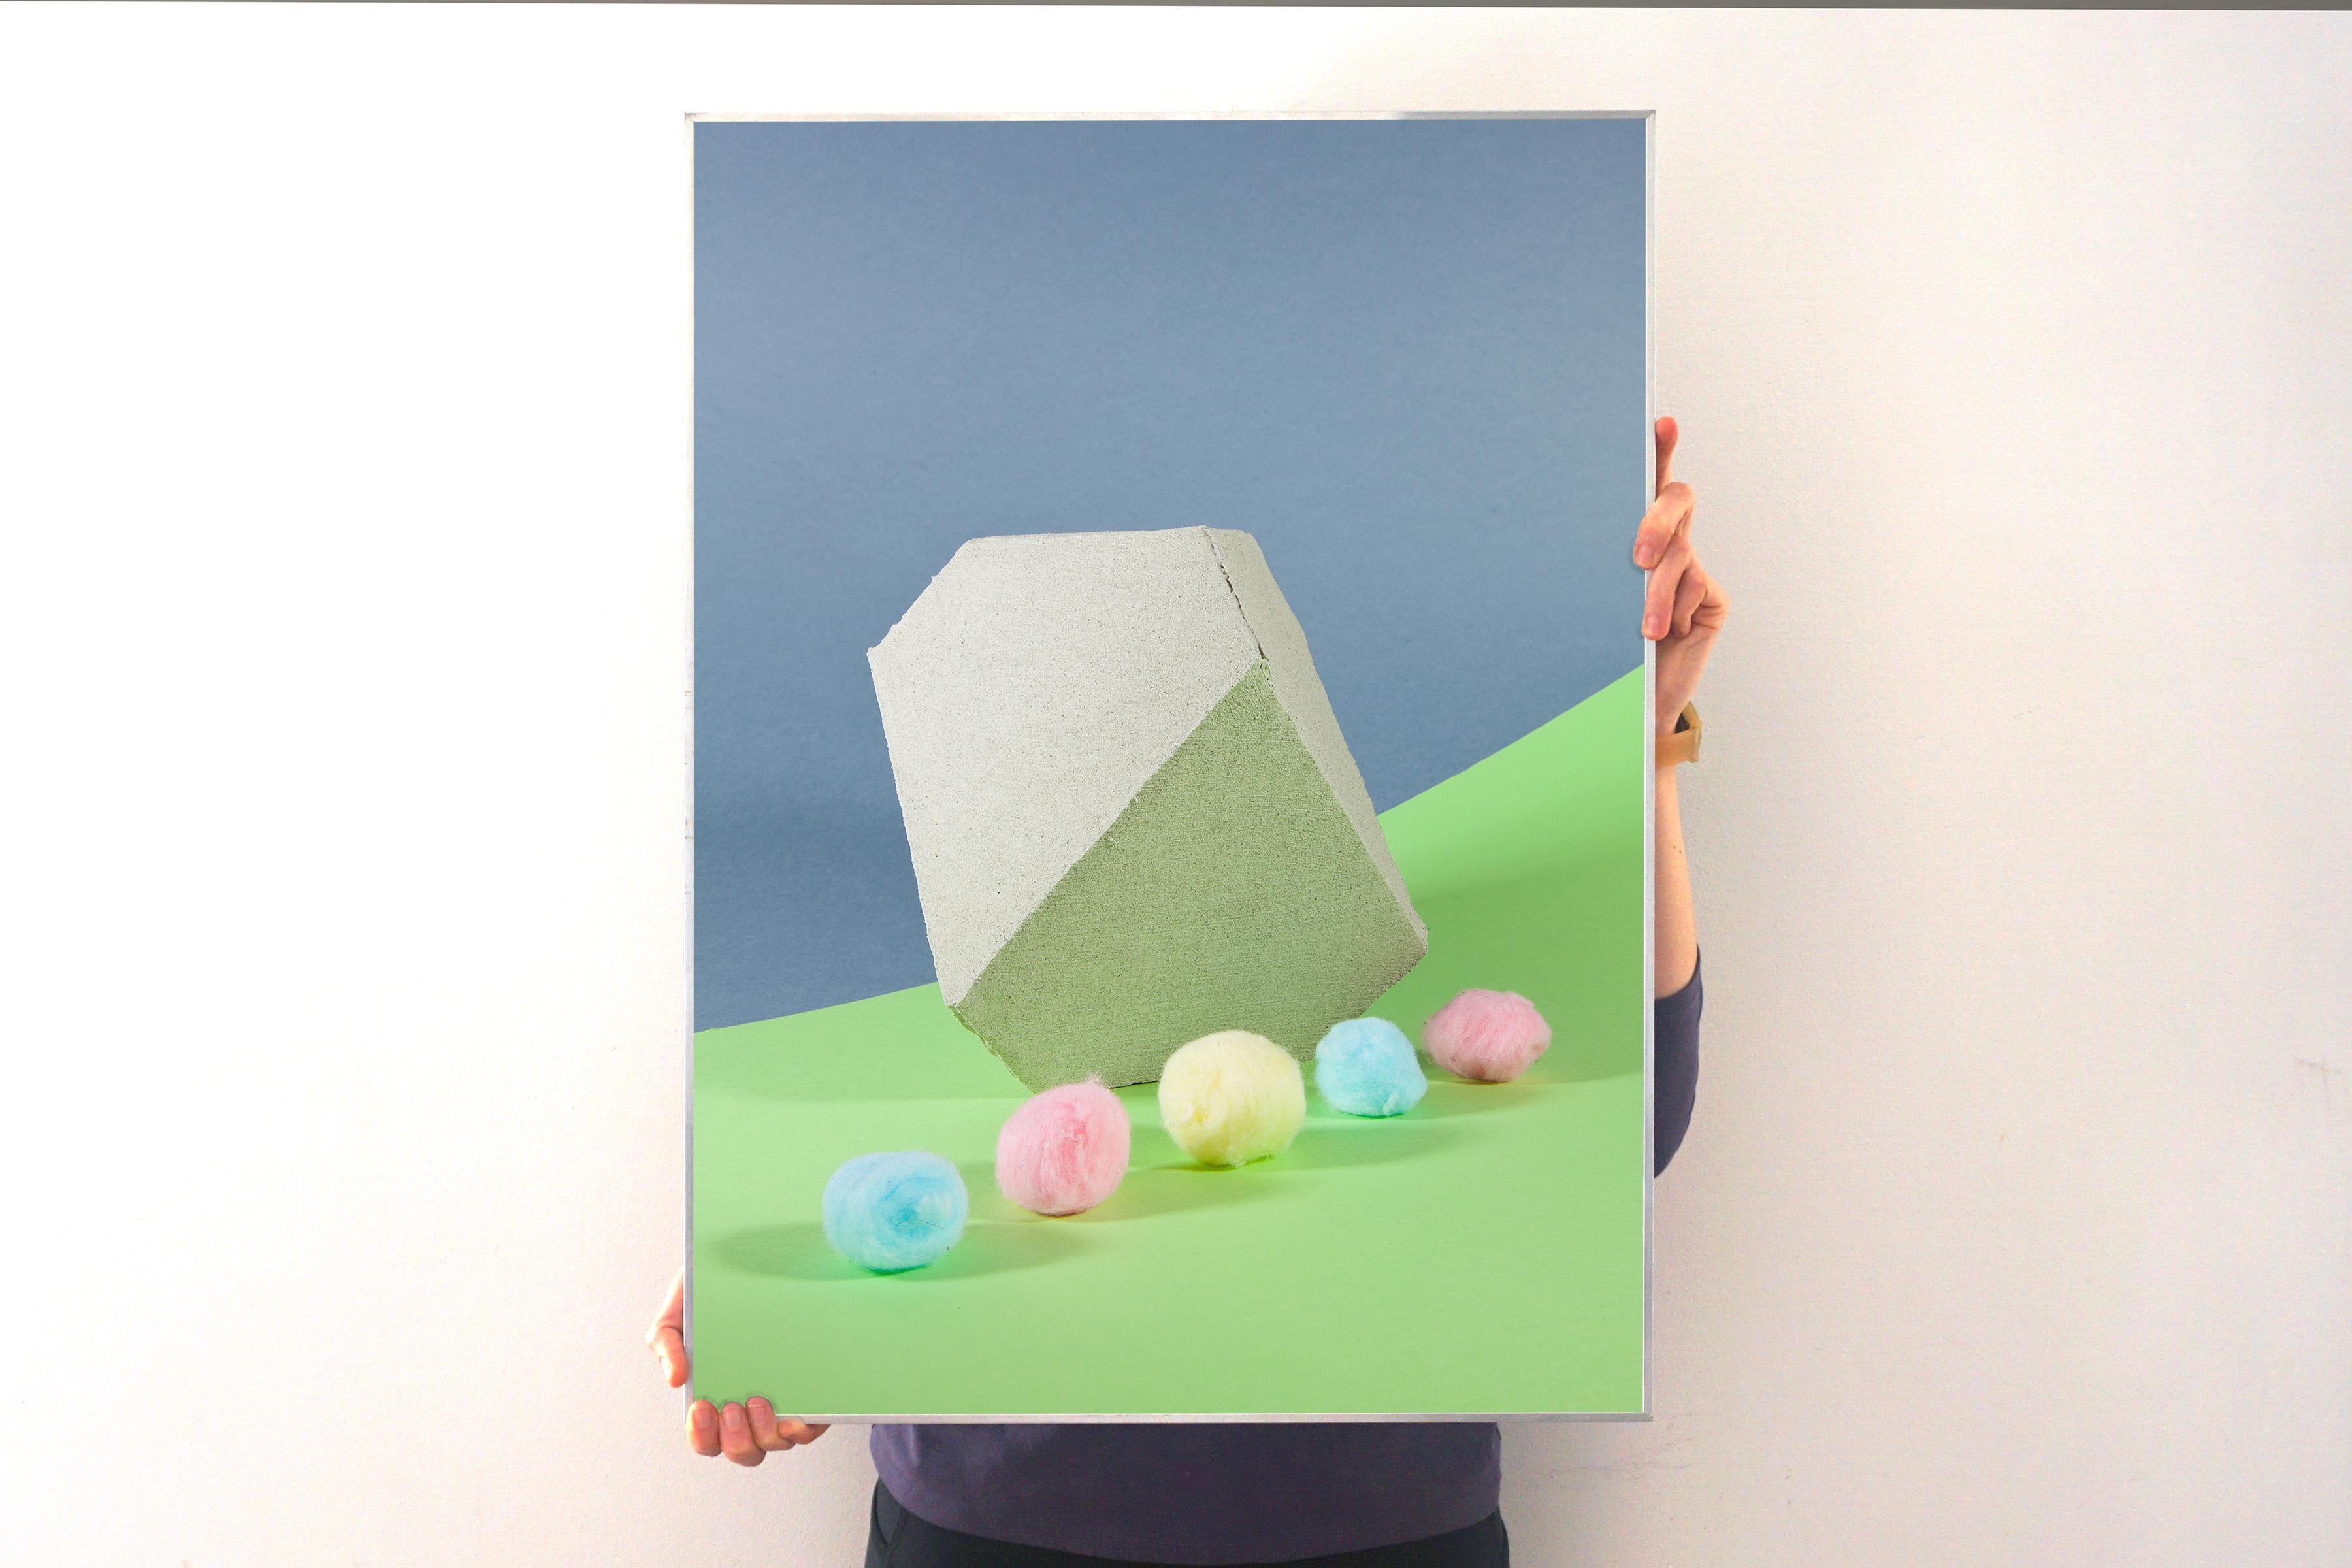 Pastellfarbenes Stillleben, futuristische einfache Formen, Miami Inspiration, limitierte Auflage  – Print von Ryan Rivadeneyra